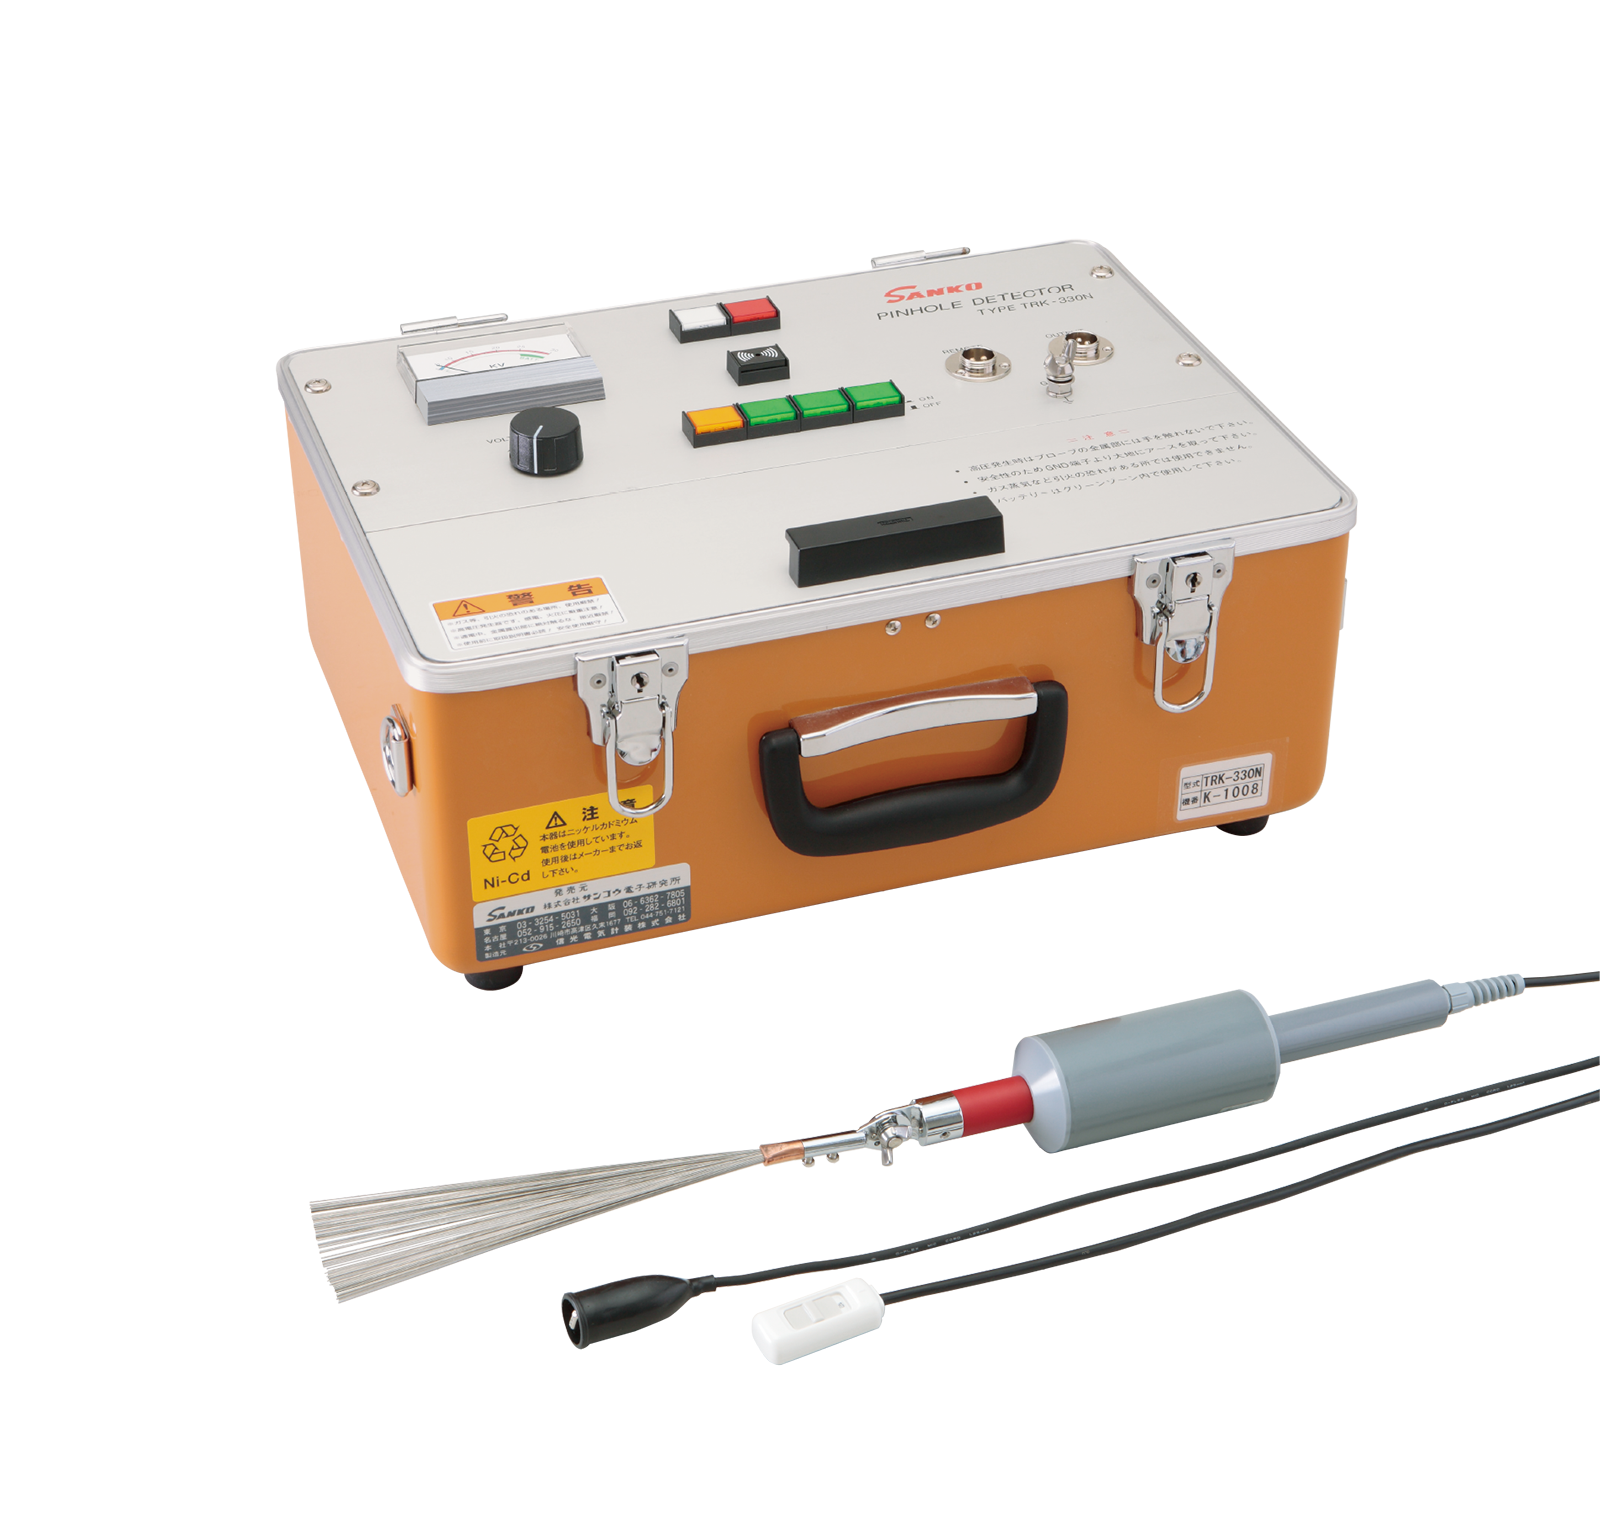 进口日本三高TRK-330N 低频脉冲 型 用于厚膜和橡胶衬里针孔探测器